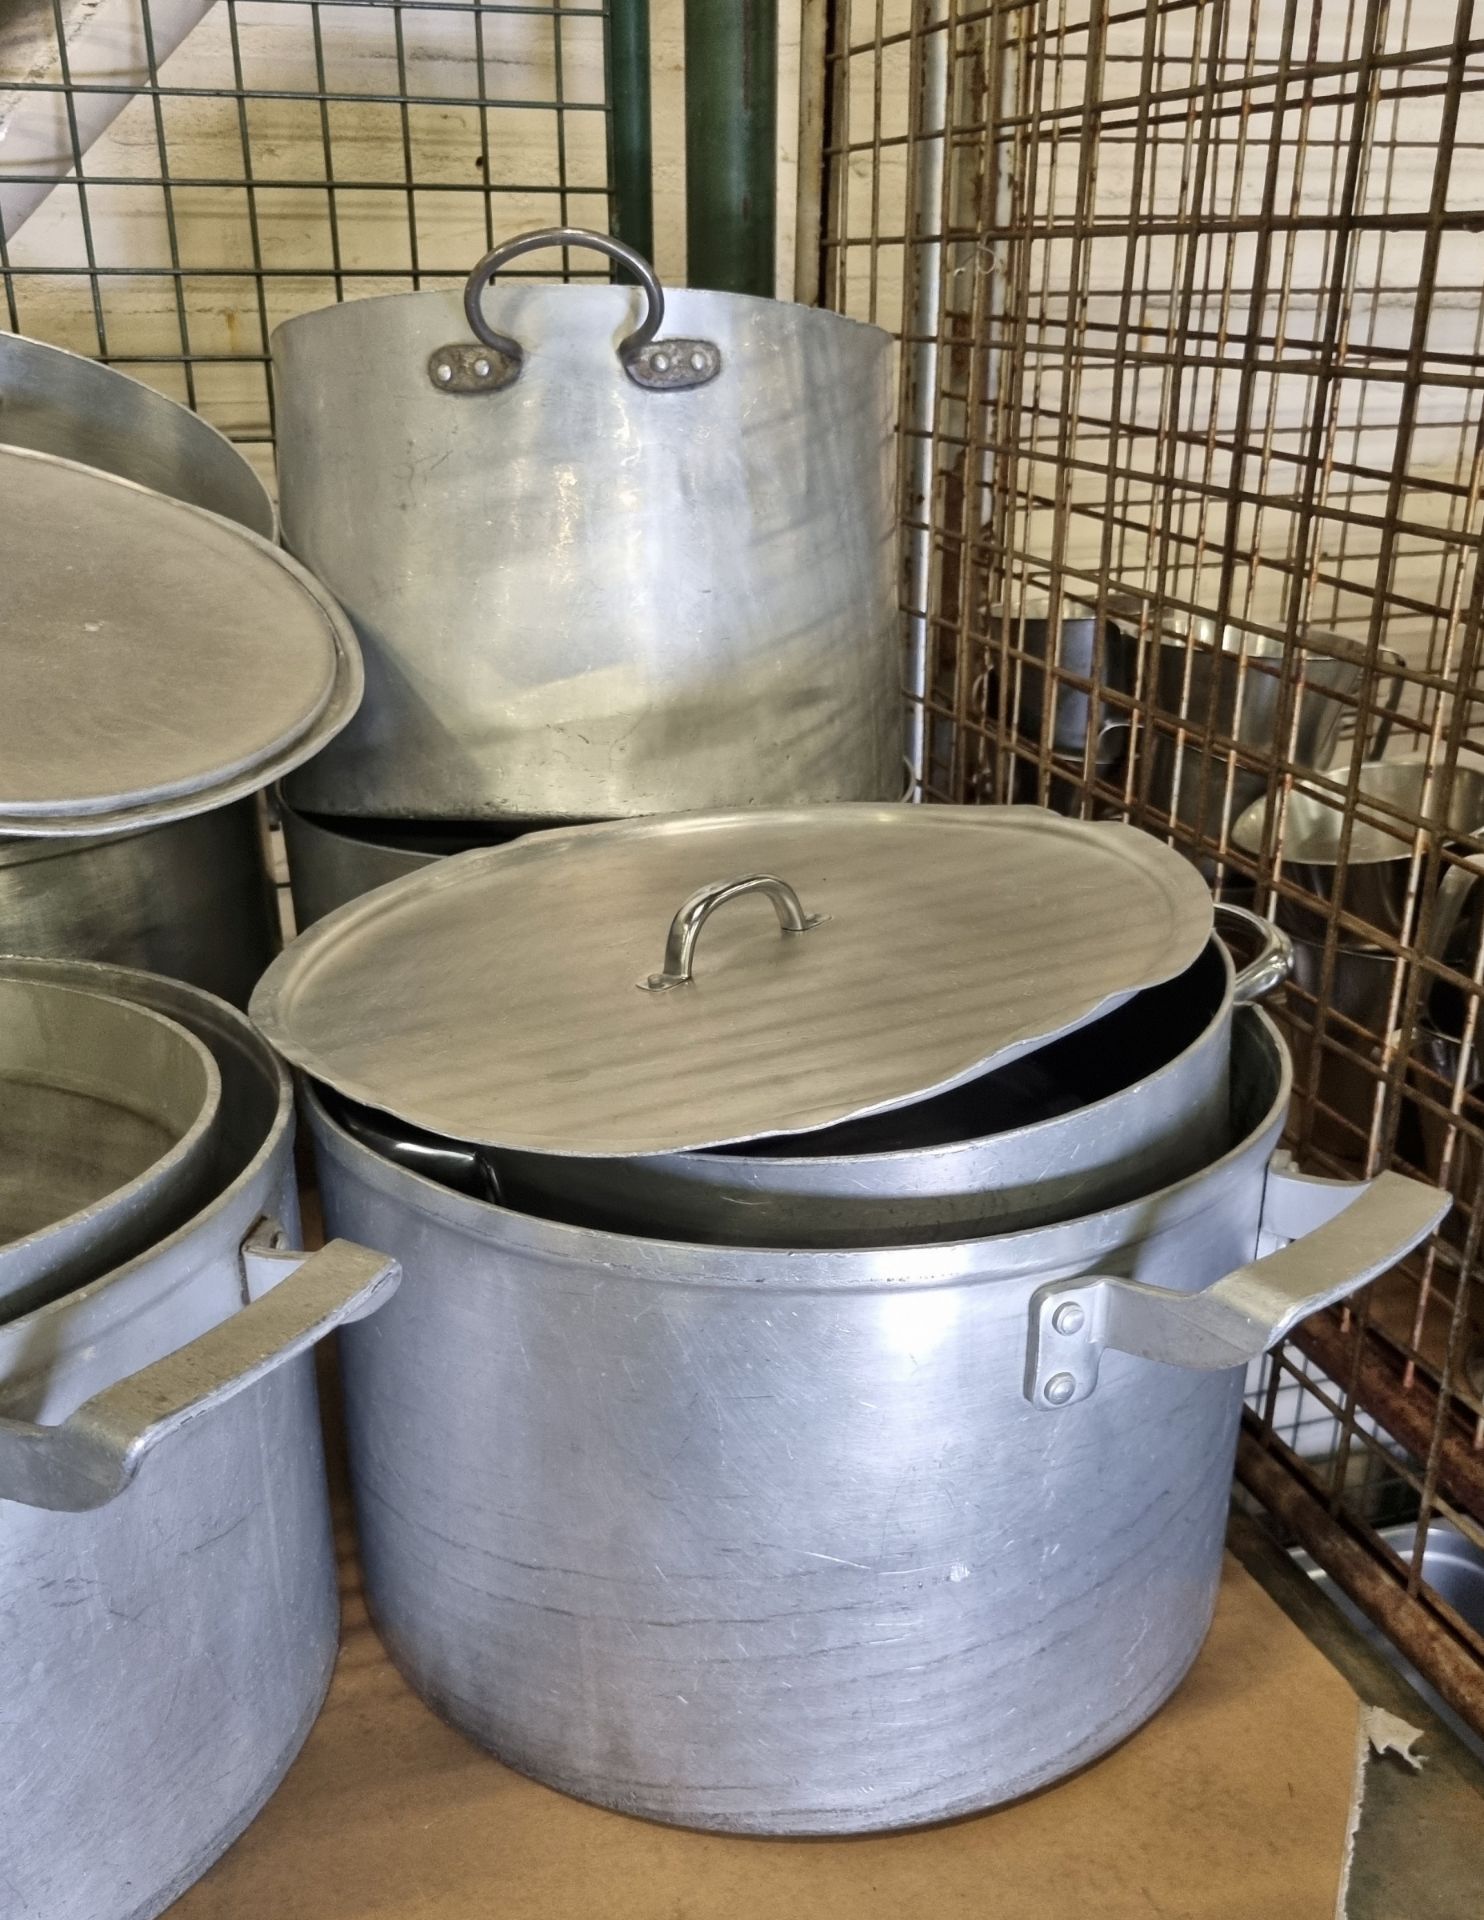 Catering equipment - saucepans - medium and large sizes - Bild 4 aus 4